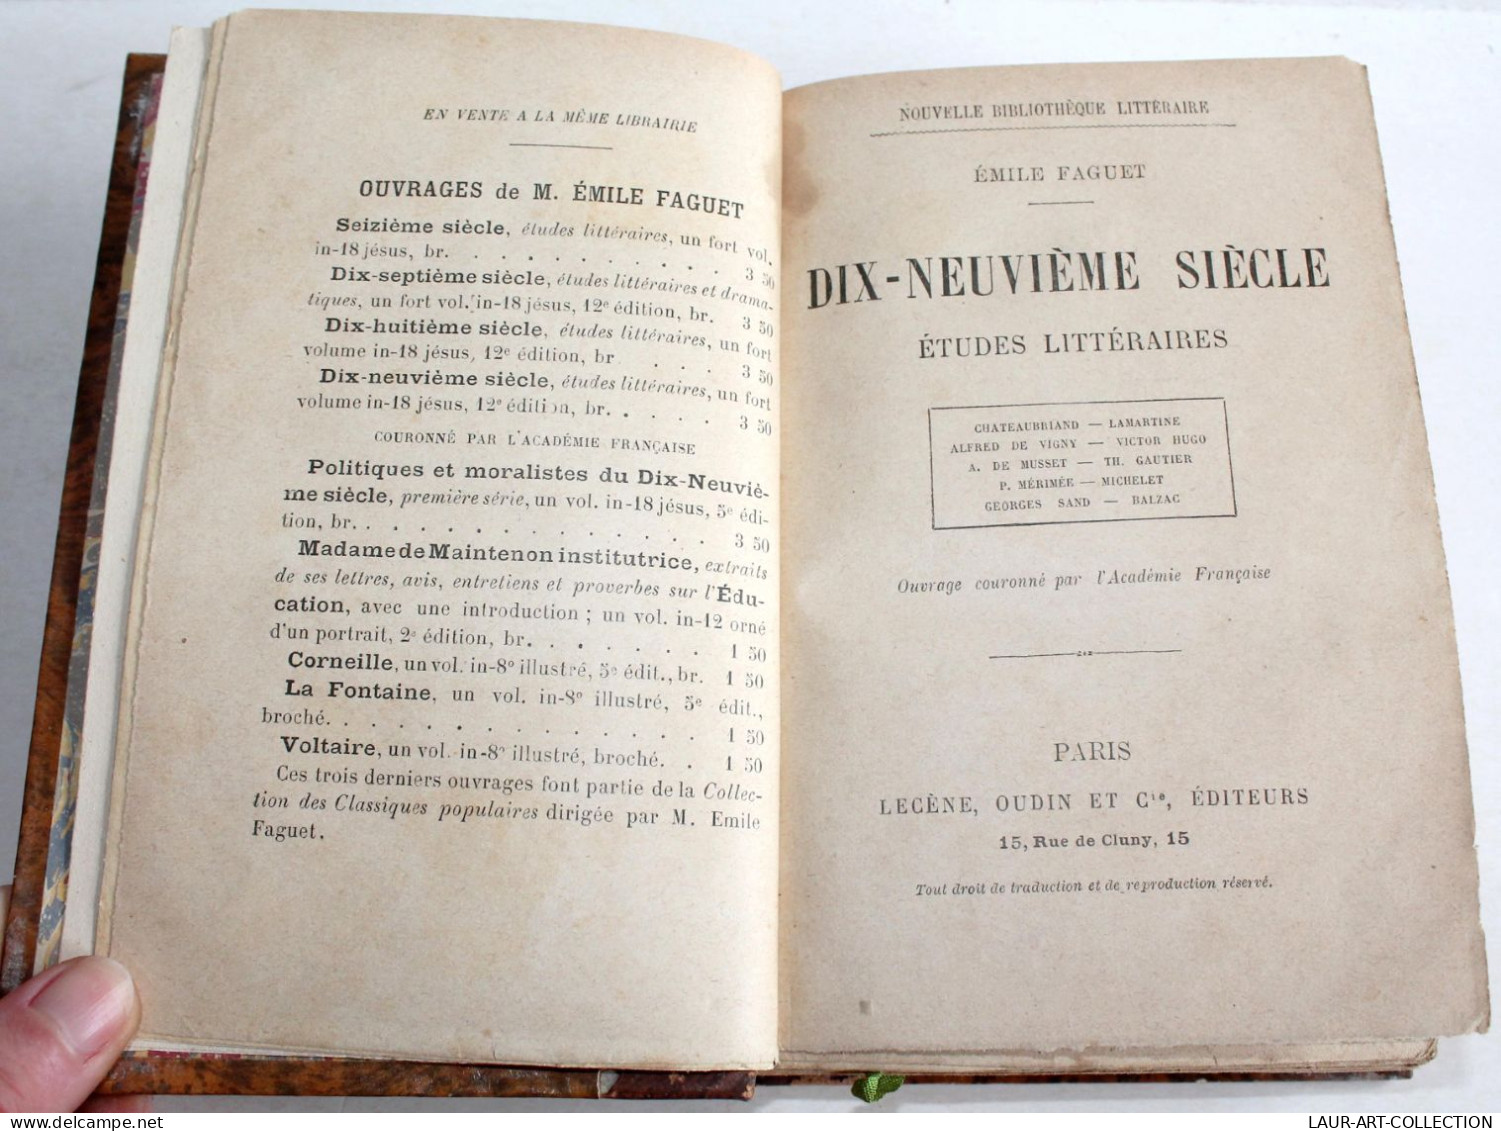 EMILE FAGUET, DIX NEUVIEME SIECLE ETUDES LITTERAIRES, CHATEAUBRIAND.. 1896 OUDIN / ANCIEN LIVRE XIXe SIECLE (2204.42) - 1801-1900